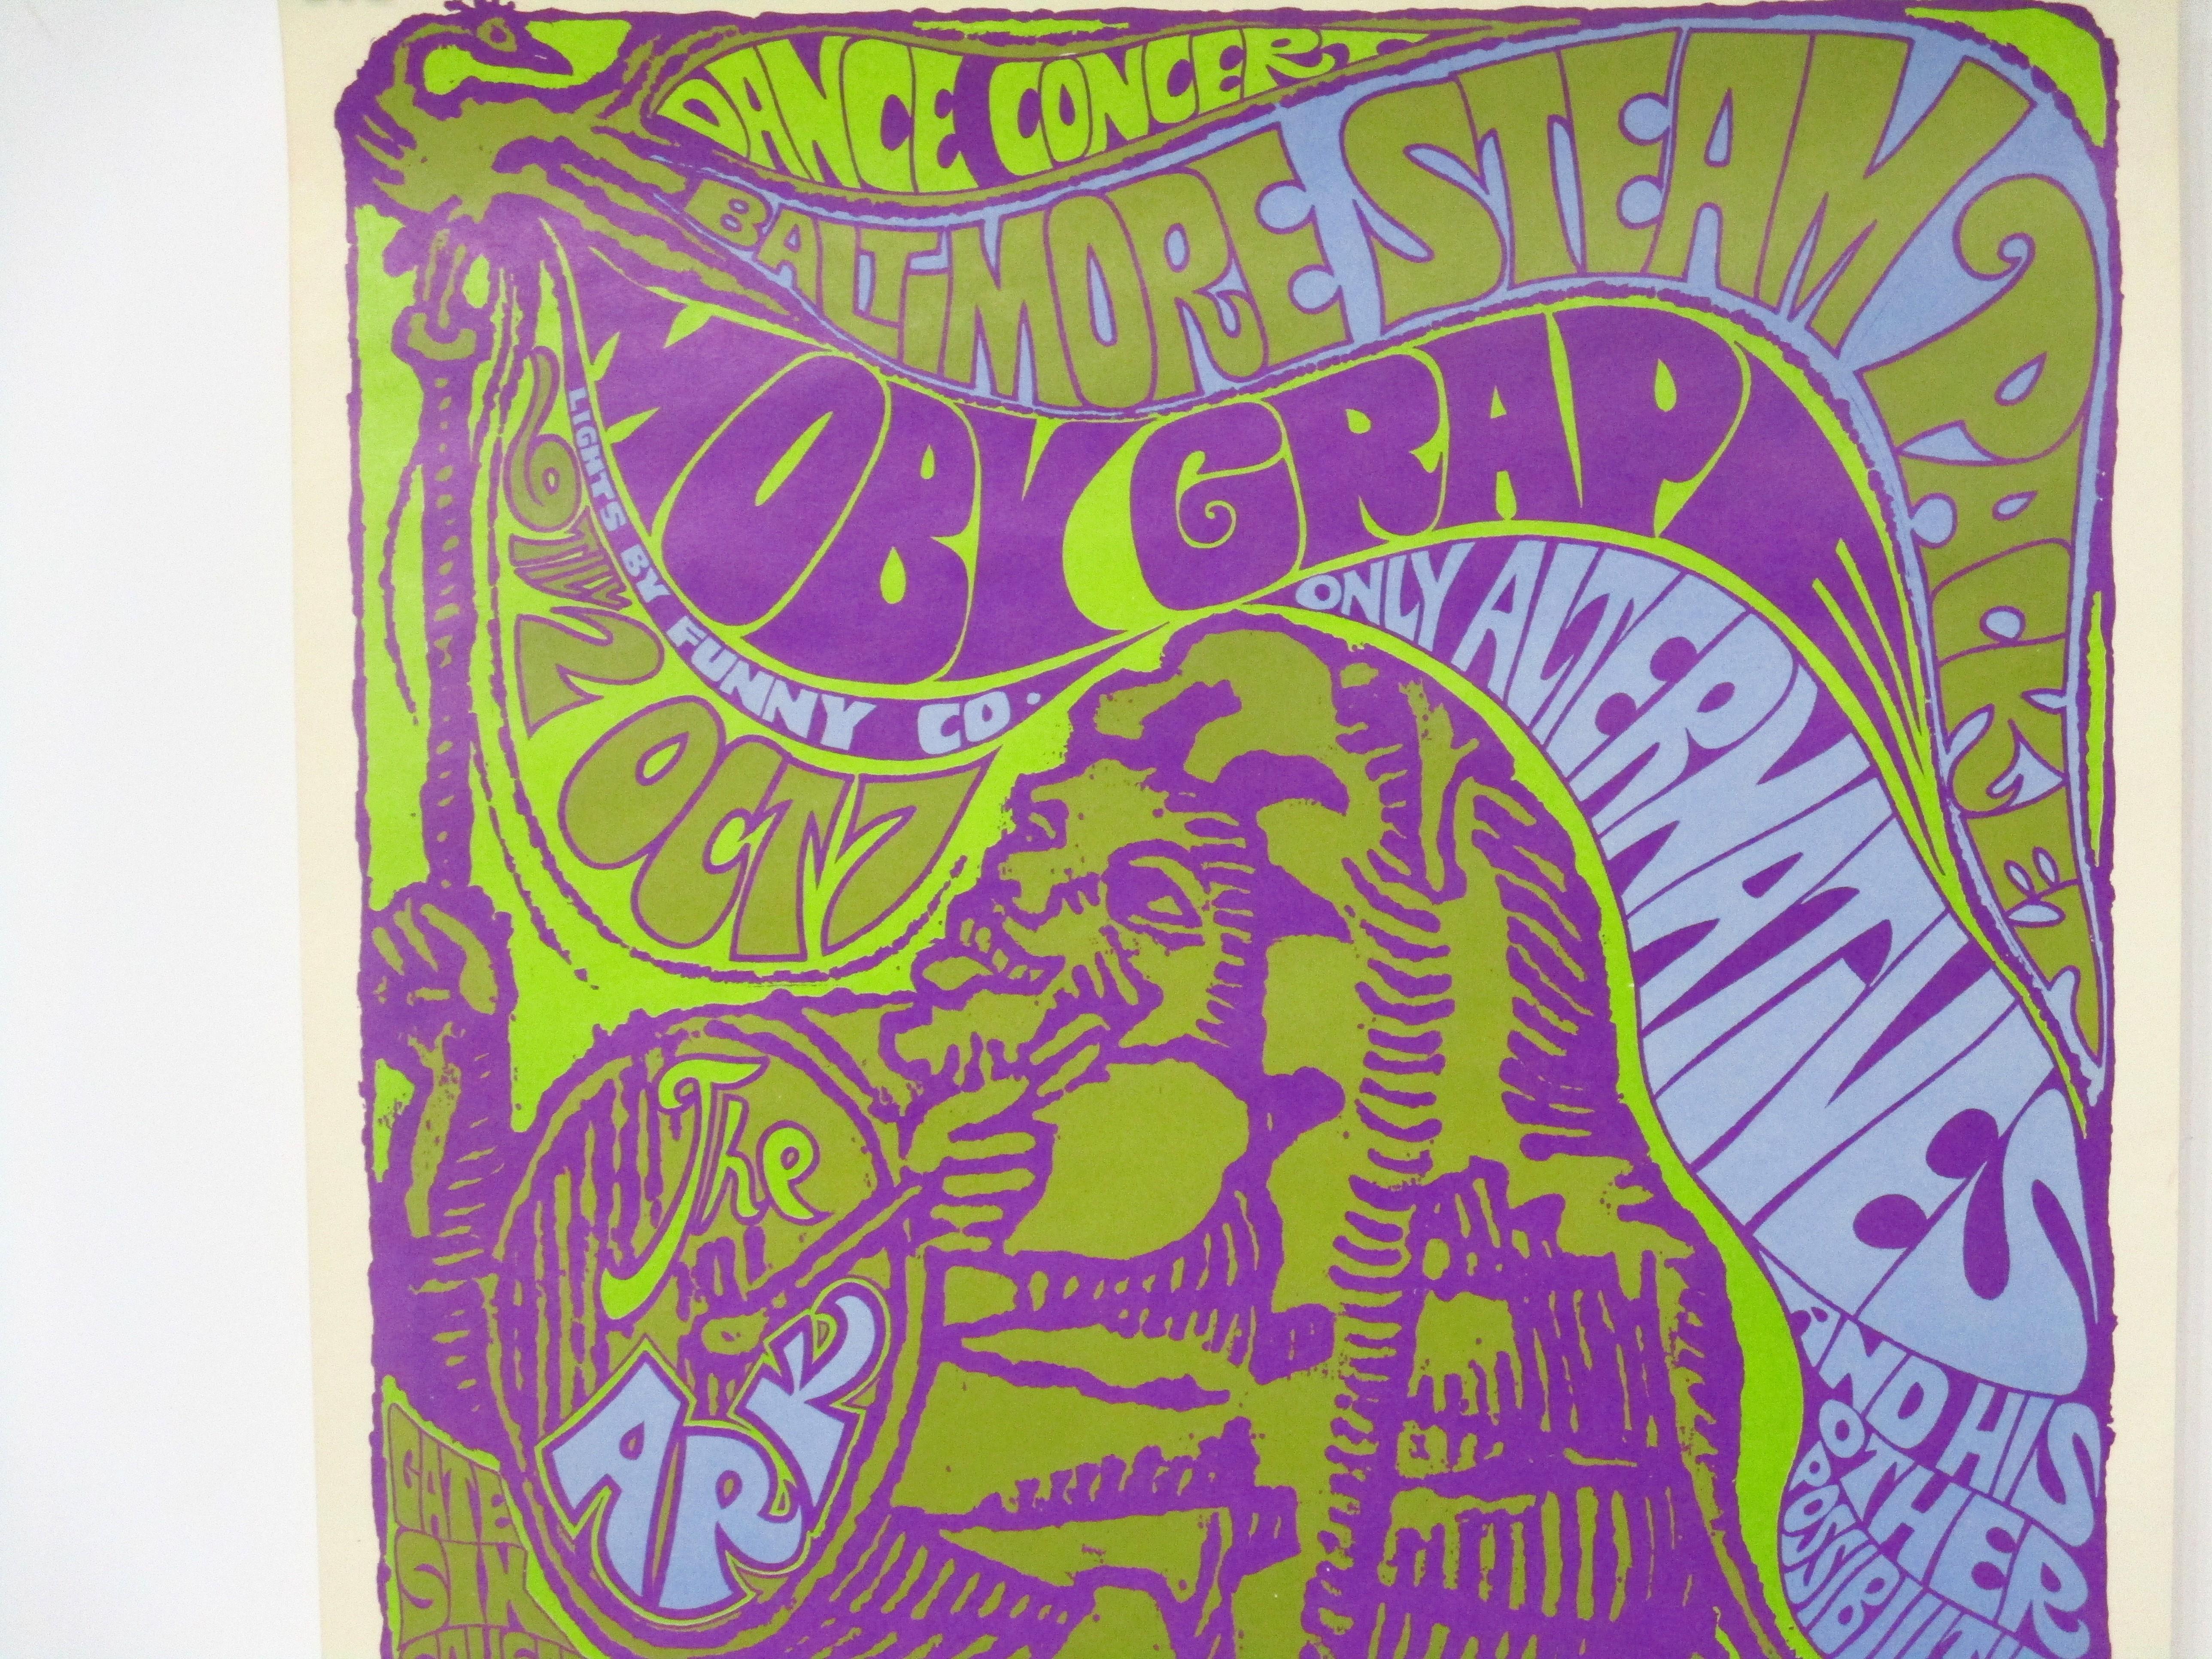 Une affiche de spectacle de rock psychédélique sauvage vintage avec une créature frappant sur un tambour annonçant un concert de danse à l'Ark . Les groupes qui joueront lors de l'événement sont Baltimore Steam Packet, Moby Grape et Only